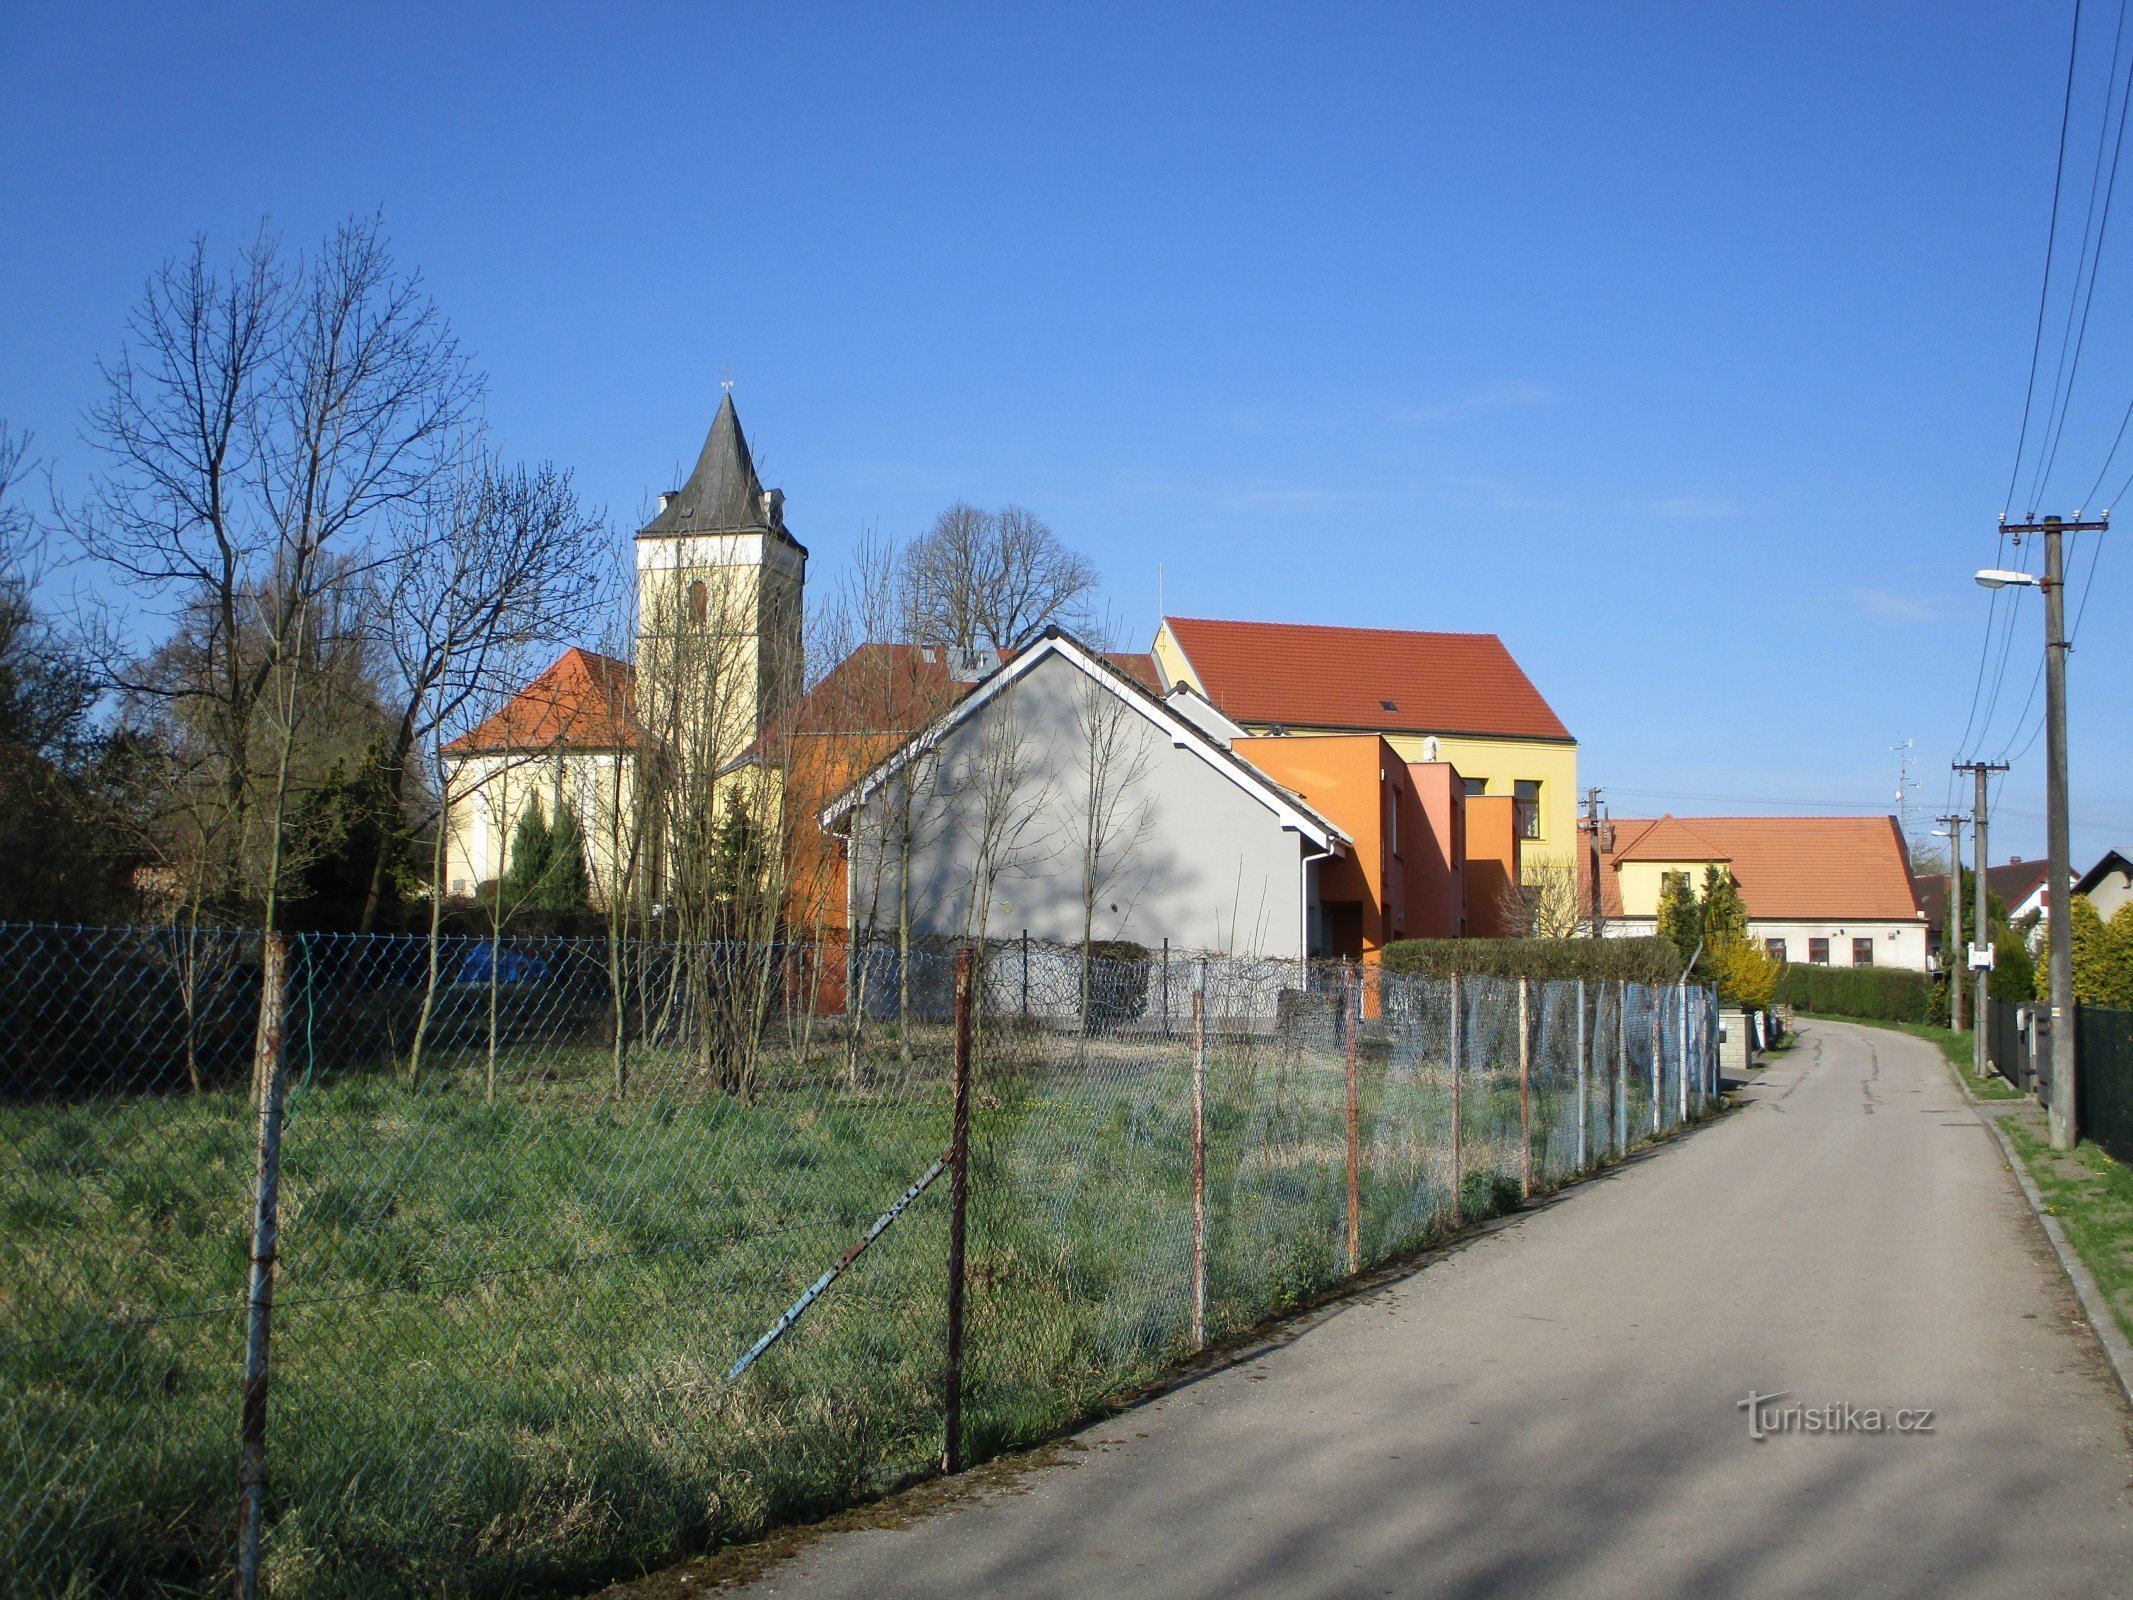 Widok na kościół i szkołę (Lochenice)